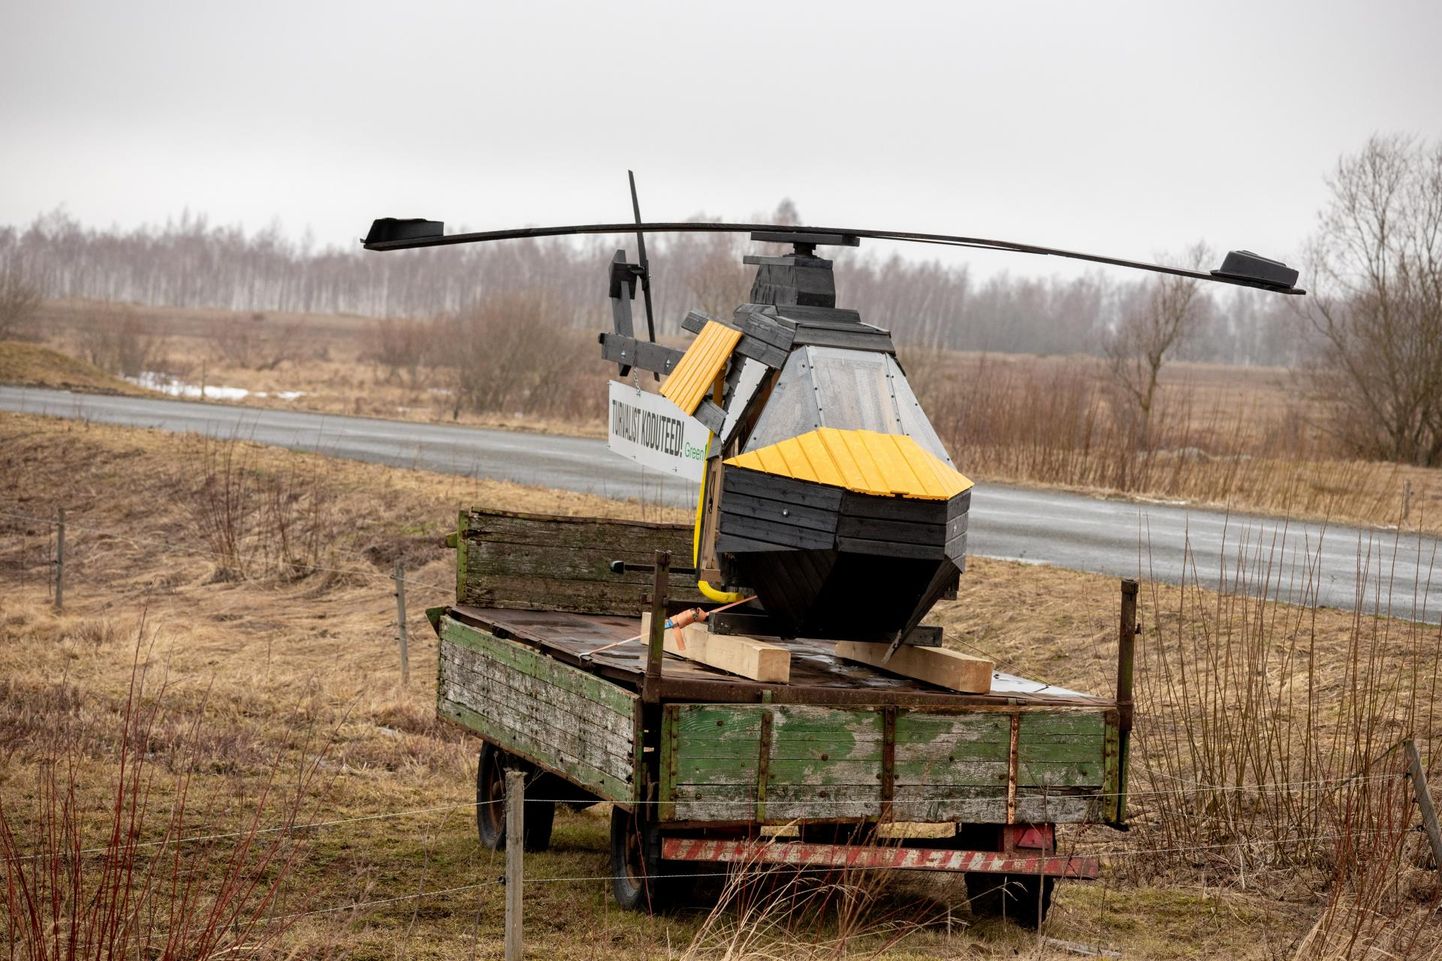 Puidust helikopter on praegu Lääneranna vallas Kirbla külas Risti–Virtsu maantee ääres.